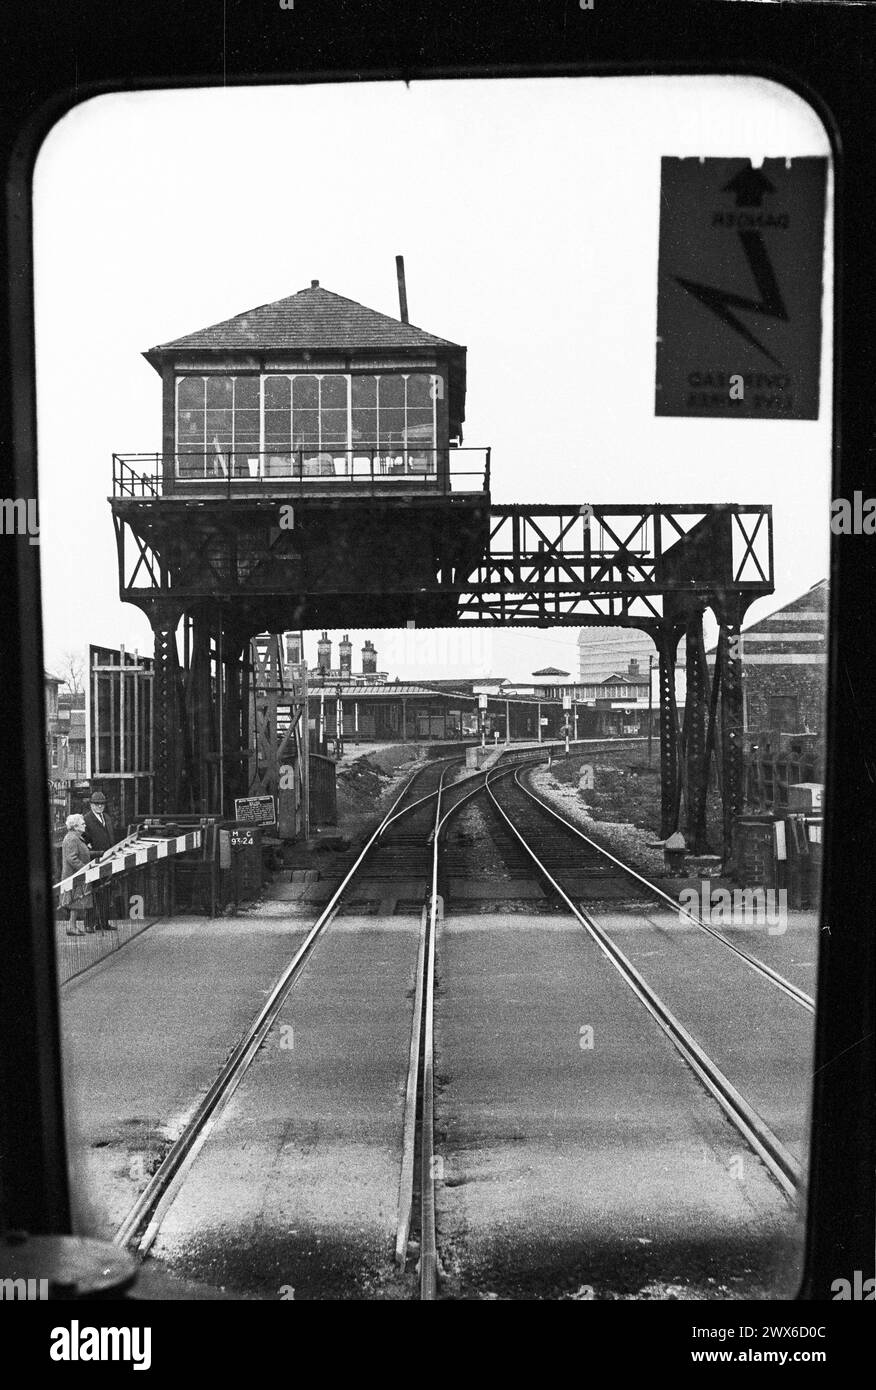 Gloucester, Inglaterra: La antigua caja de señal de Barton Street montada en pórtico, con la estación Eastgate vista más allá, marzo de 1974. Tanto la caja de señal como la estación están demolidas. Visto desde la parte delantera de un tren de pasajeros. Foto de stock